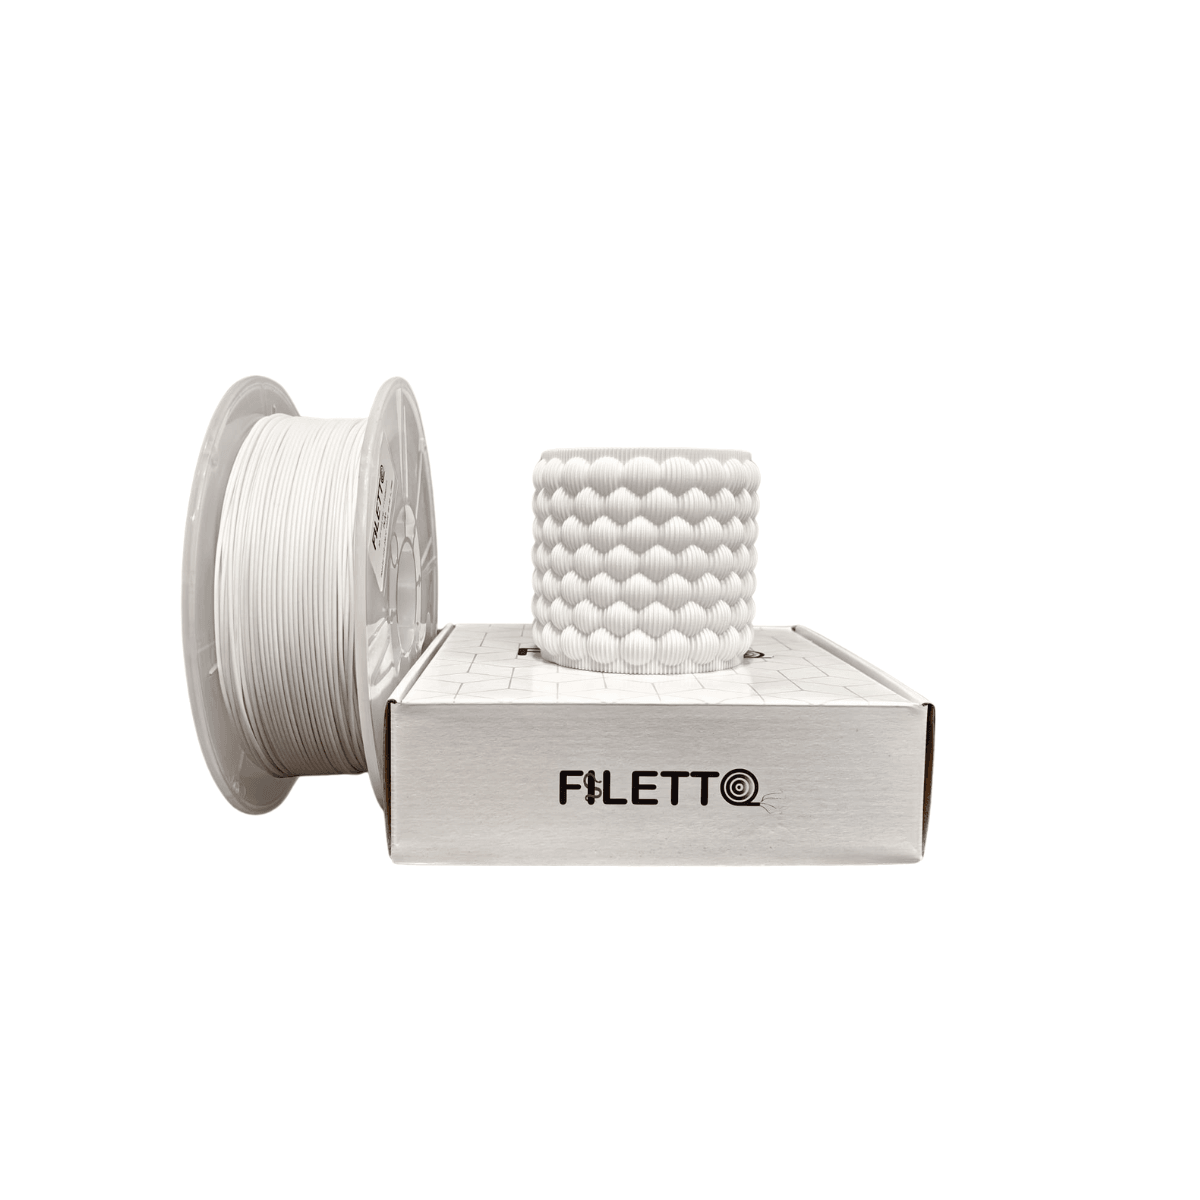 Filetto Pla+ Filament 1.75mm 1KG - White